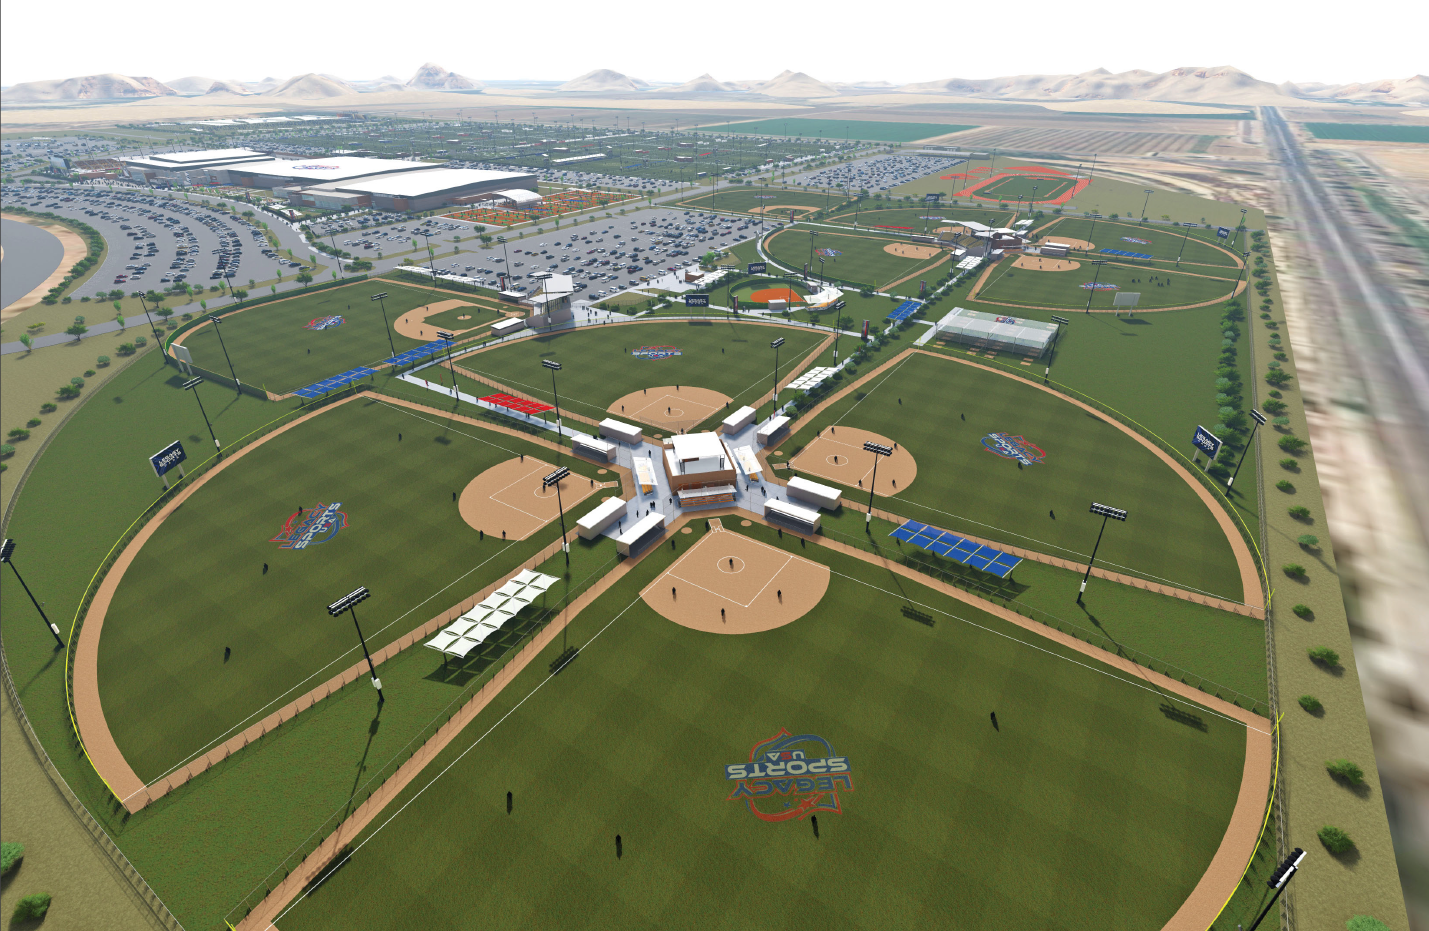 New mega sports complex in Queen Creek Arizona.